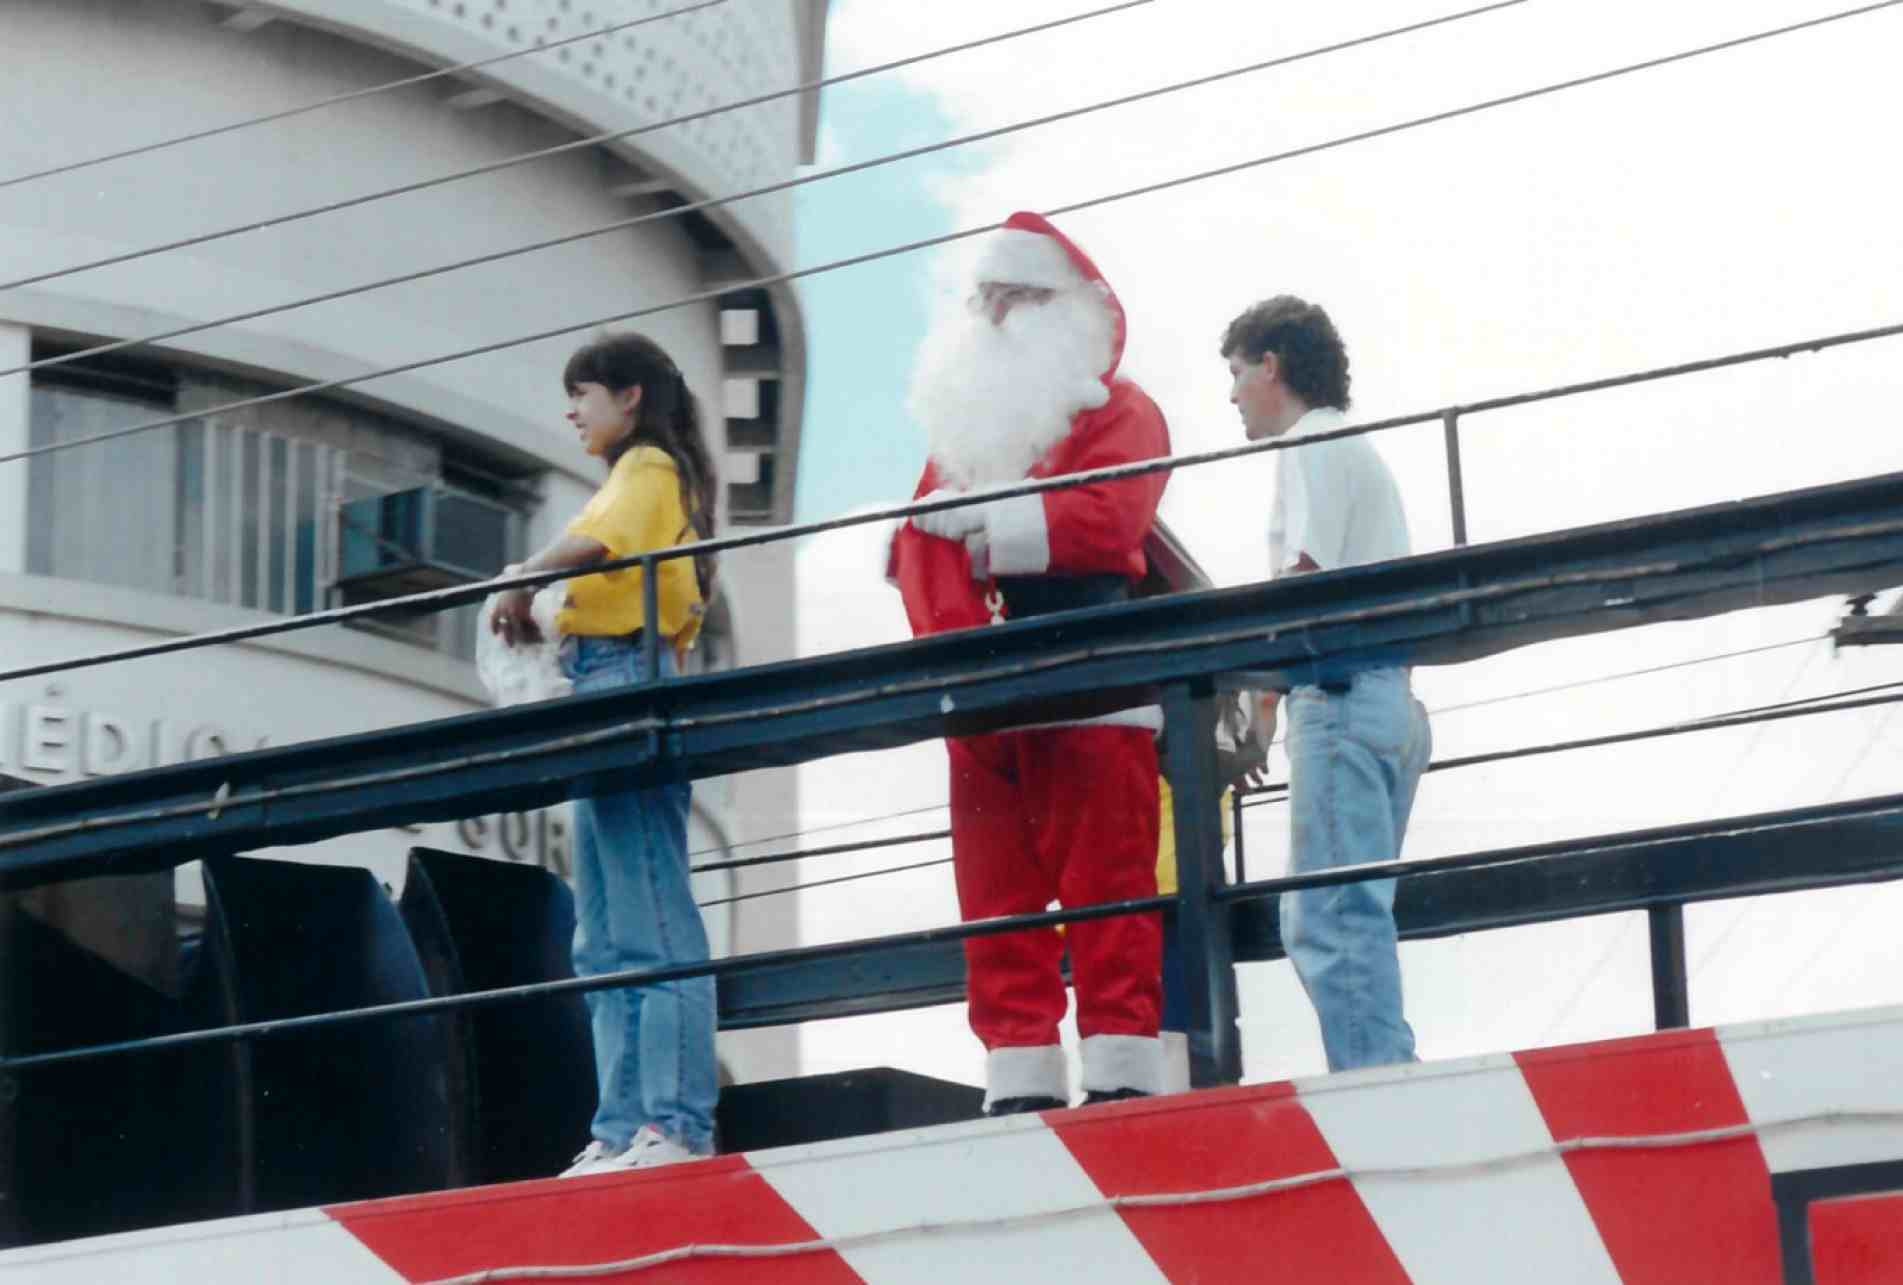 Evento natalino com desfile do bom velhinho promovido por um banco, no Centro de Sorocaba, em 1994.